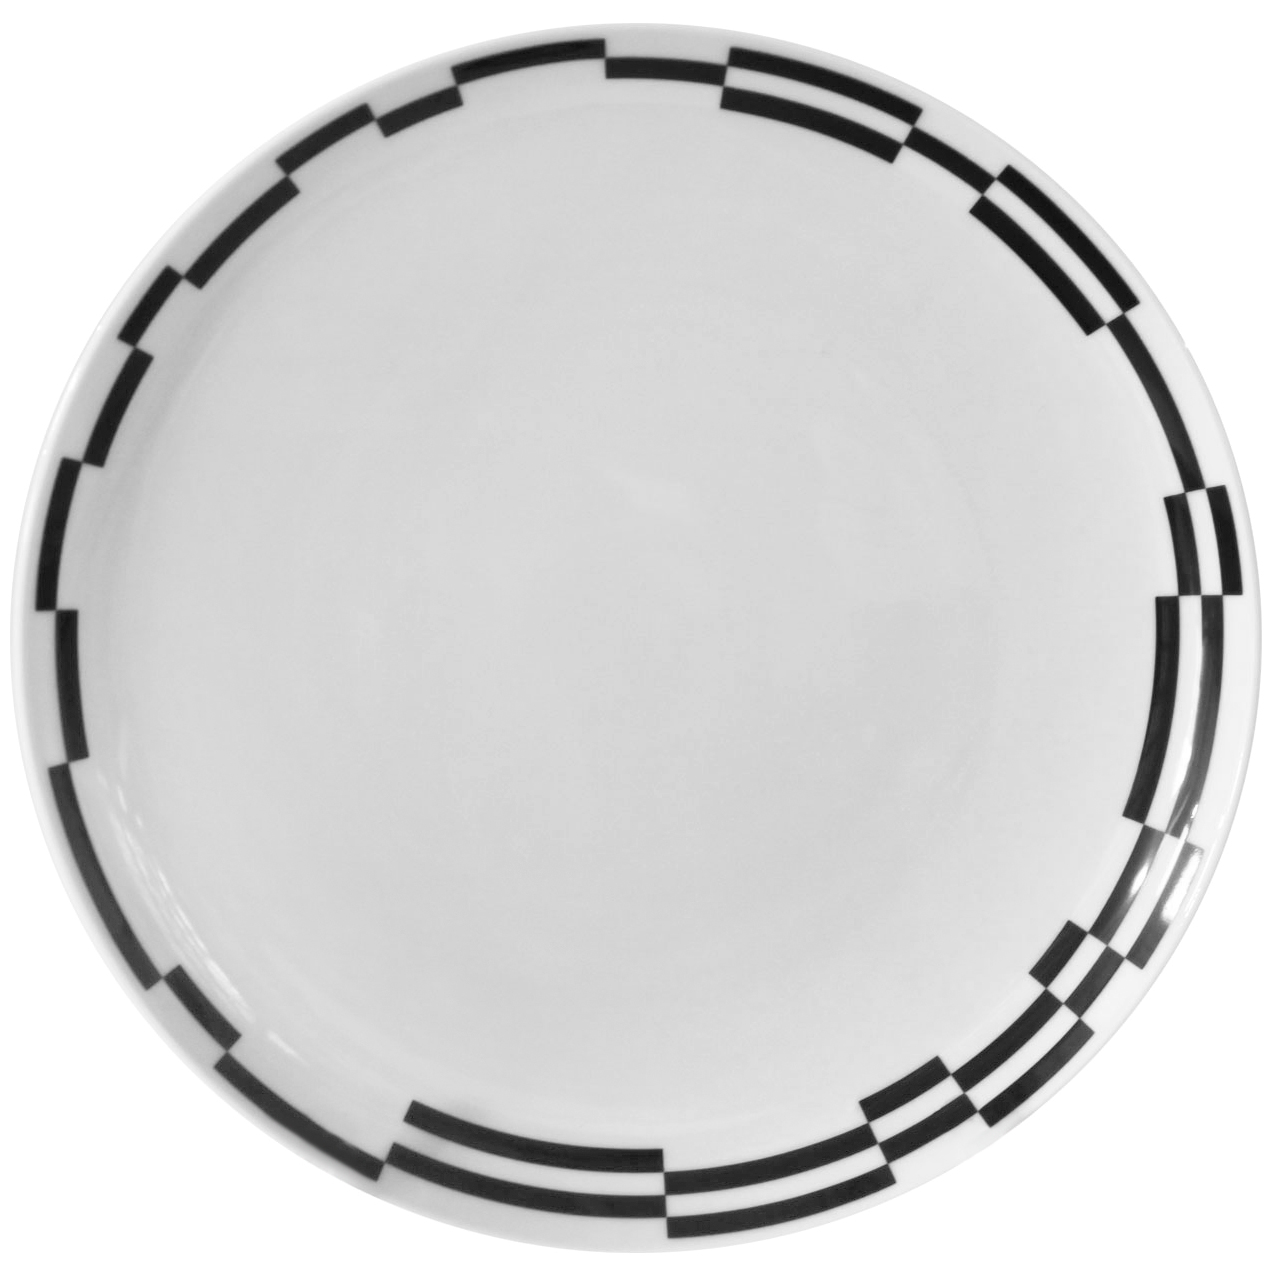 Тарелка мелкая Thun Tom Черно-белые полоски 26 см тарелка мелкая thun loos платиновые полоски 24 см